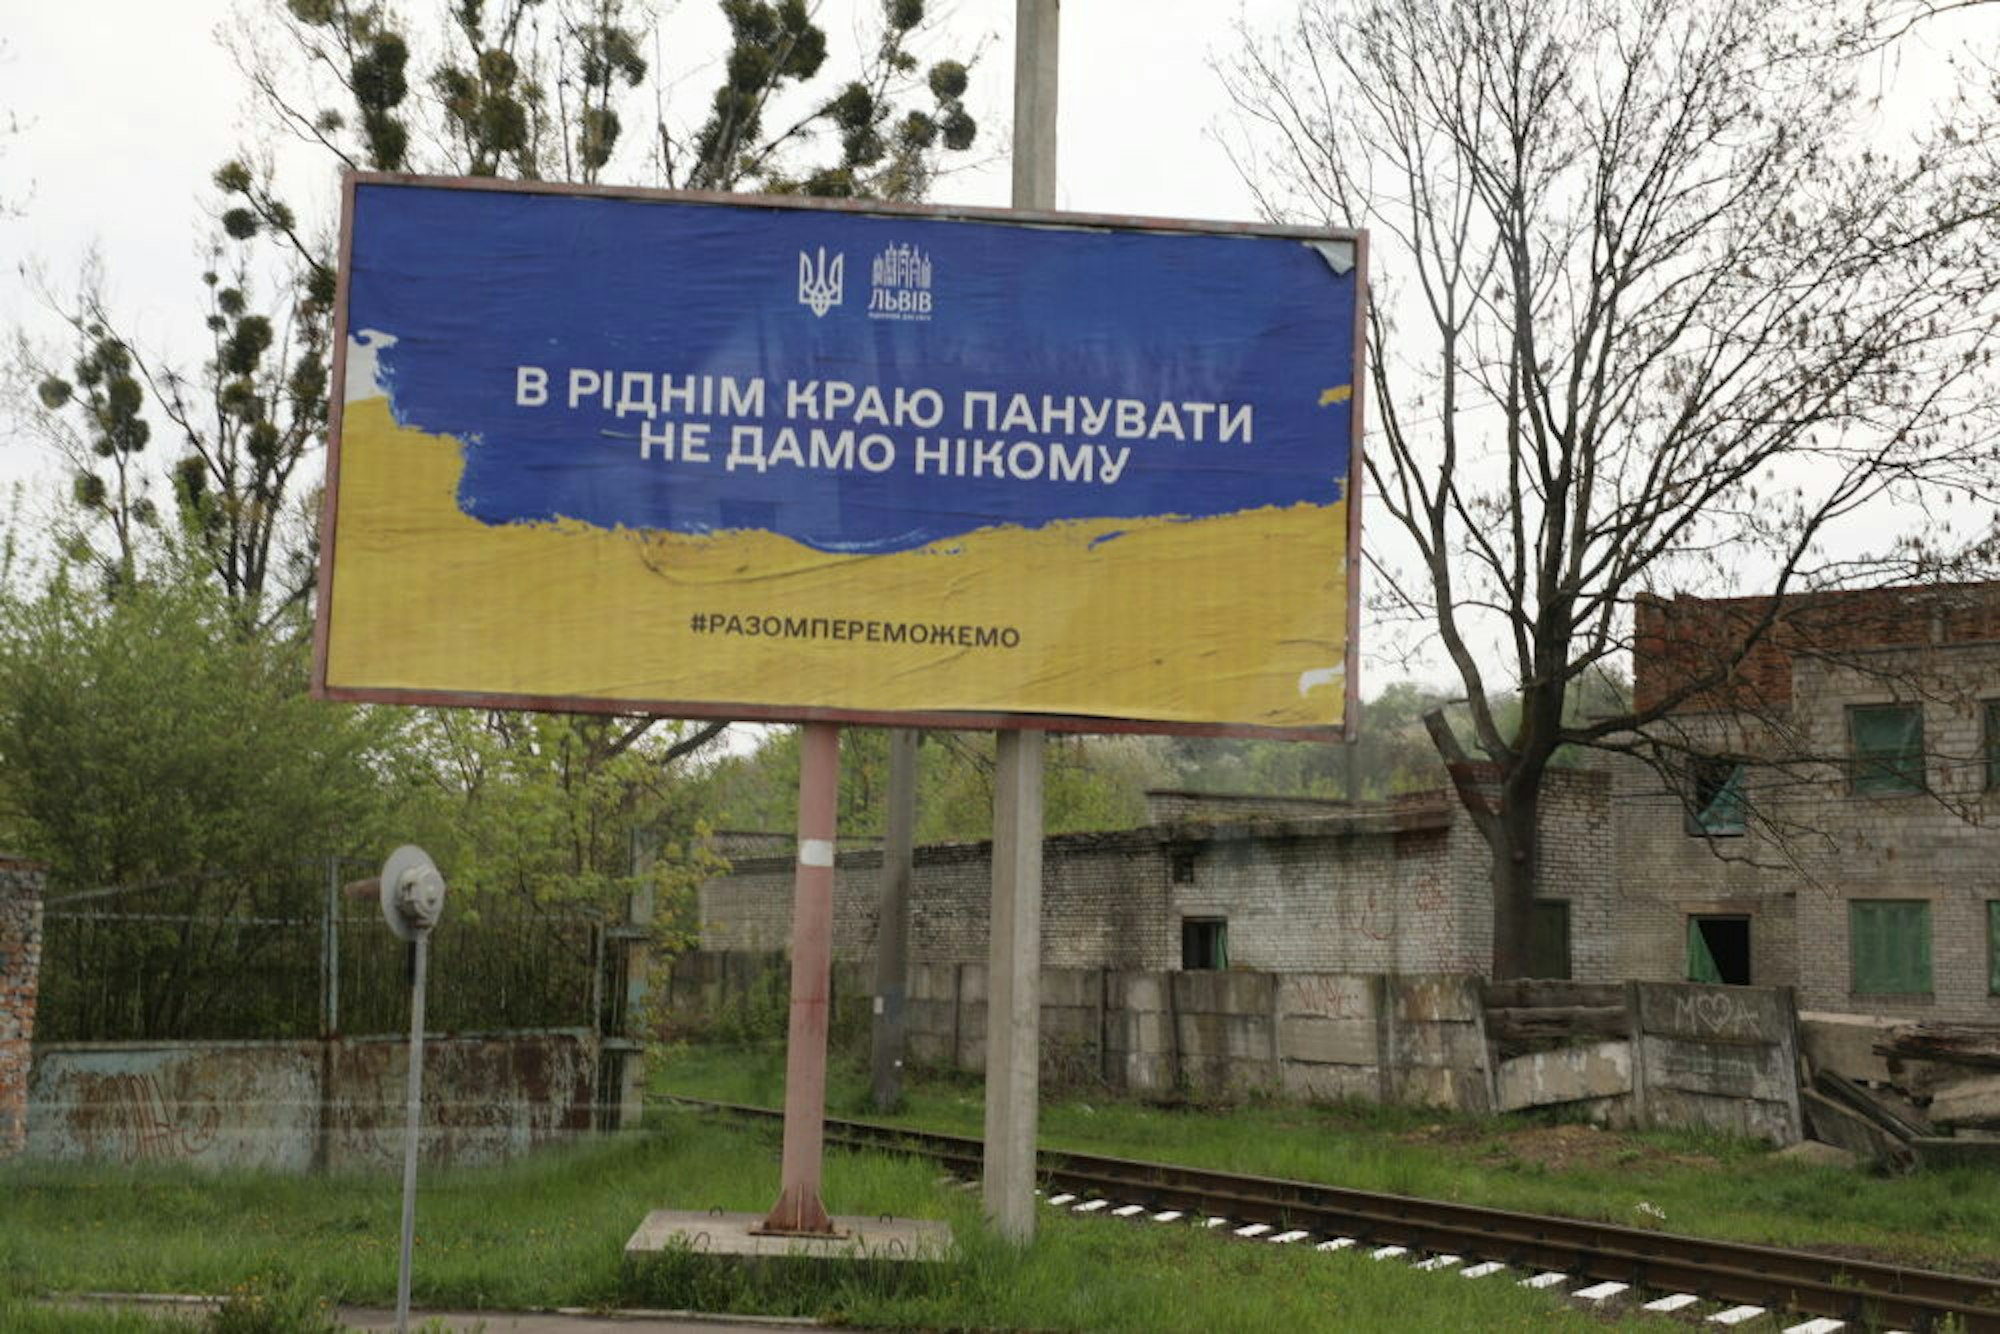 Durchhalteappelle für die Verteidigung gegen Russland in Lviv.